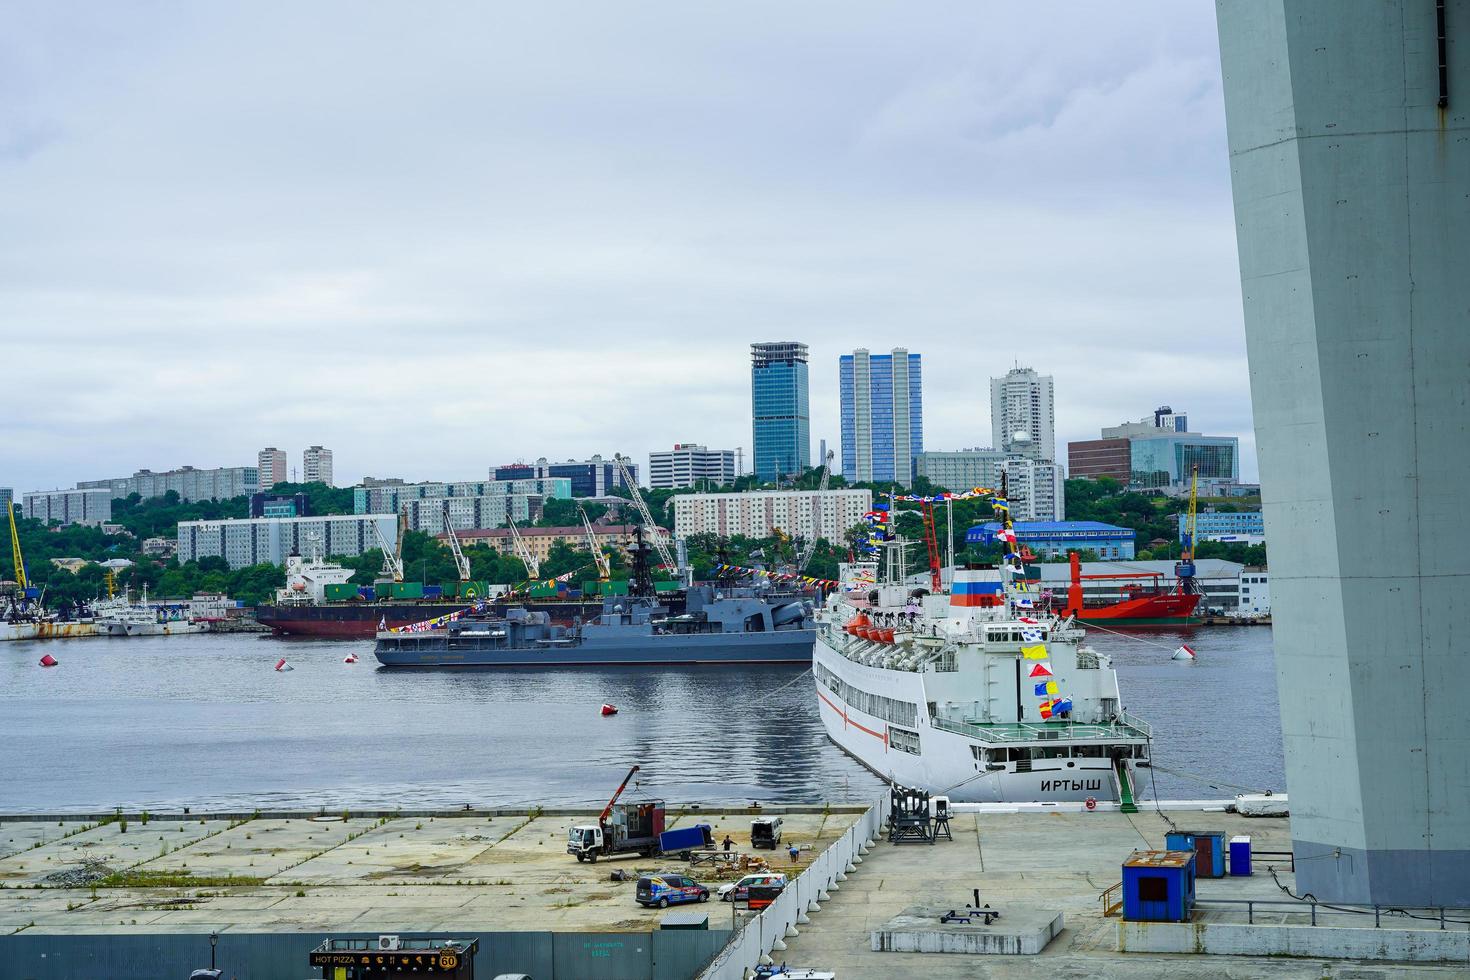 wladiwostok, russland - 26. juli 2020 - kriegsschiffe auf dem hintergrund der stadtlandschaft. Tag der Marine. foto